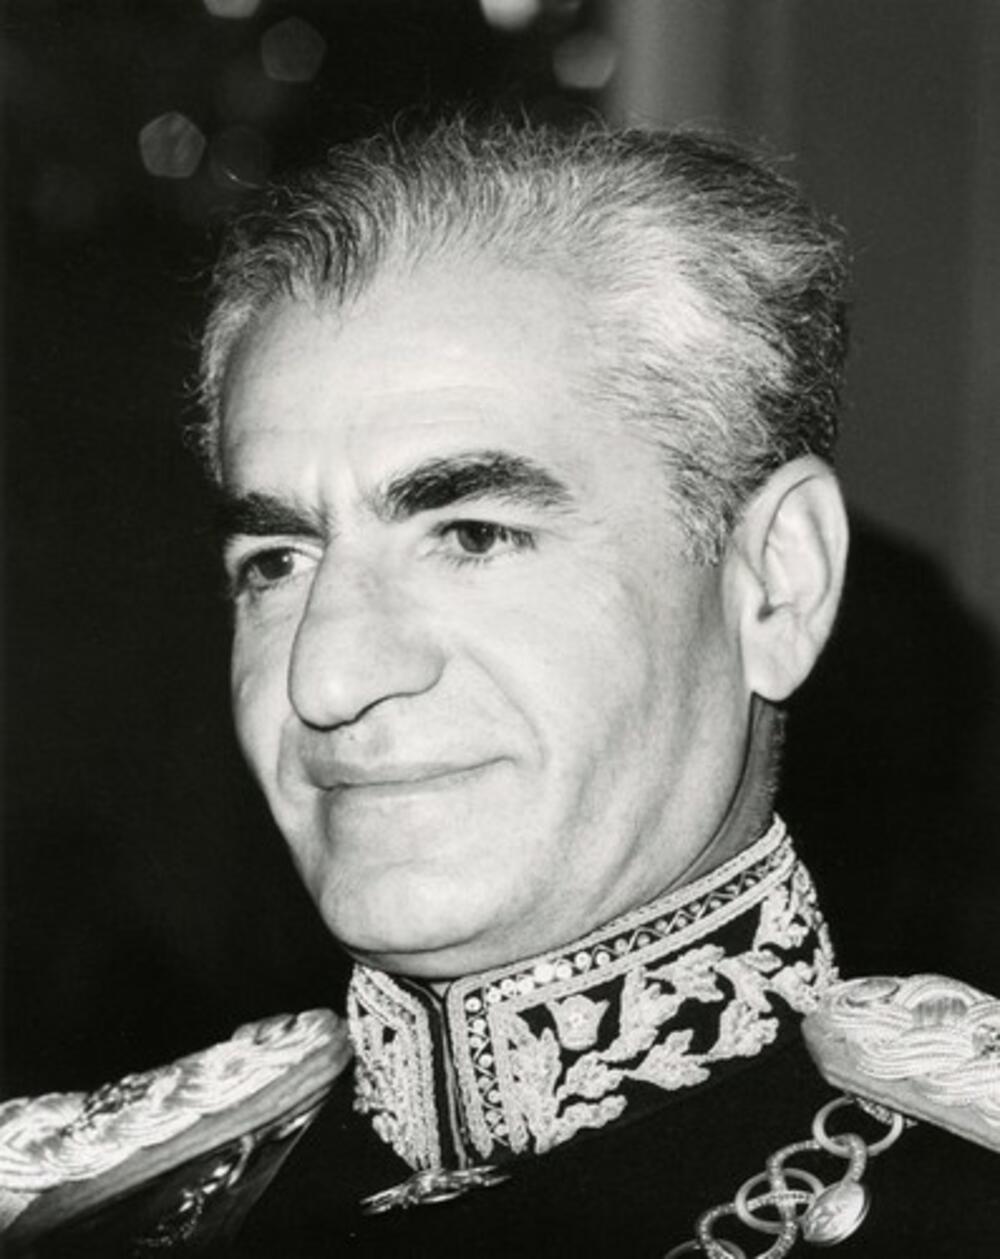 Mohamed Reza Šah Pahlavi